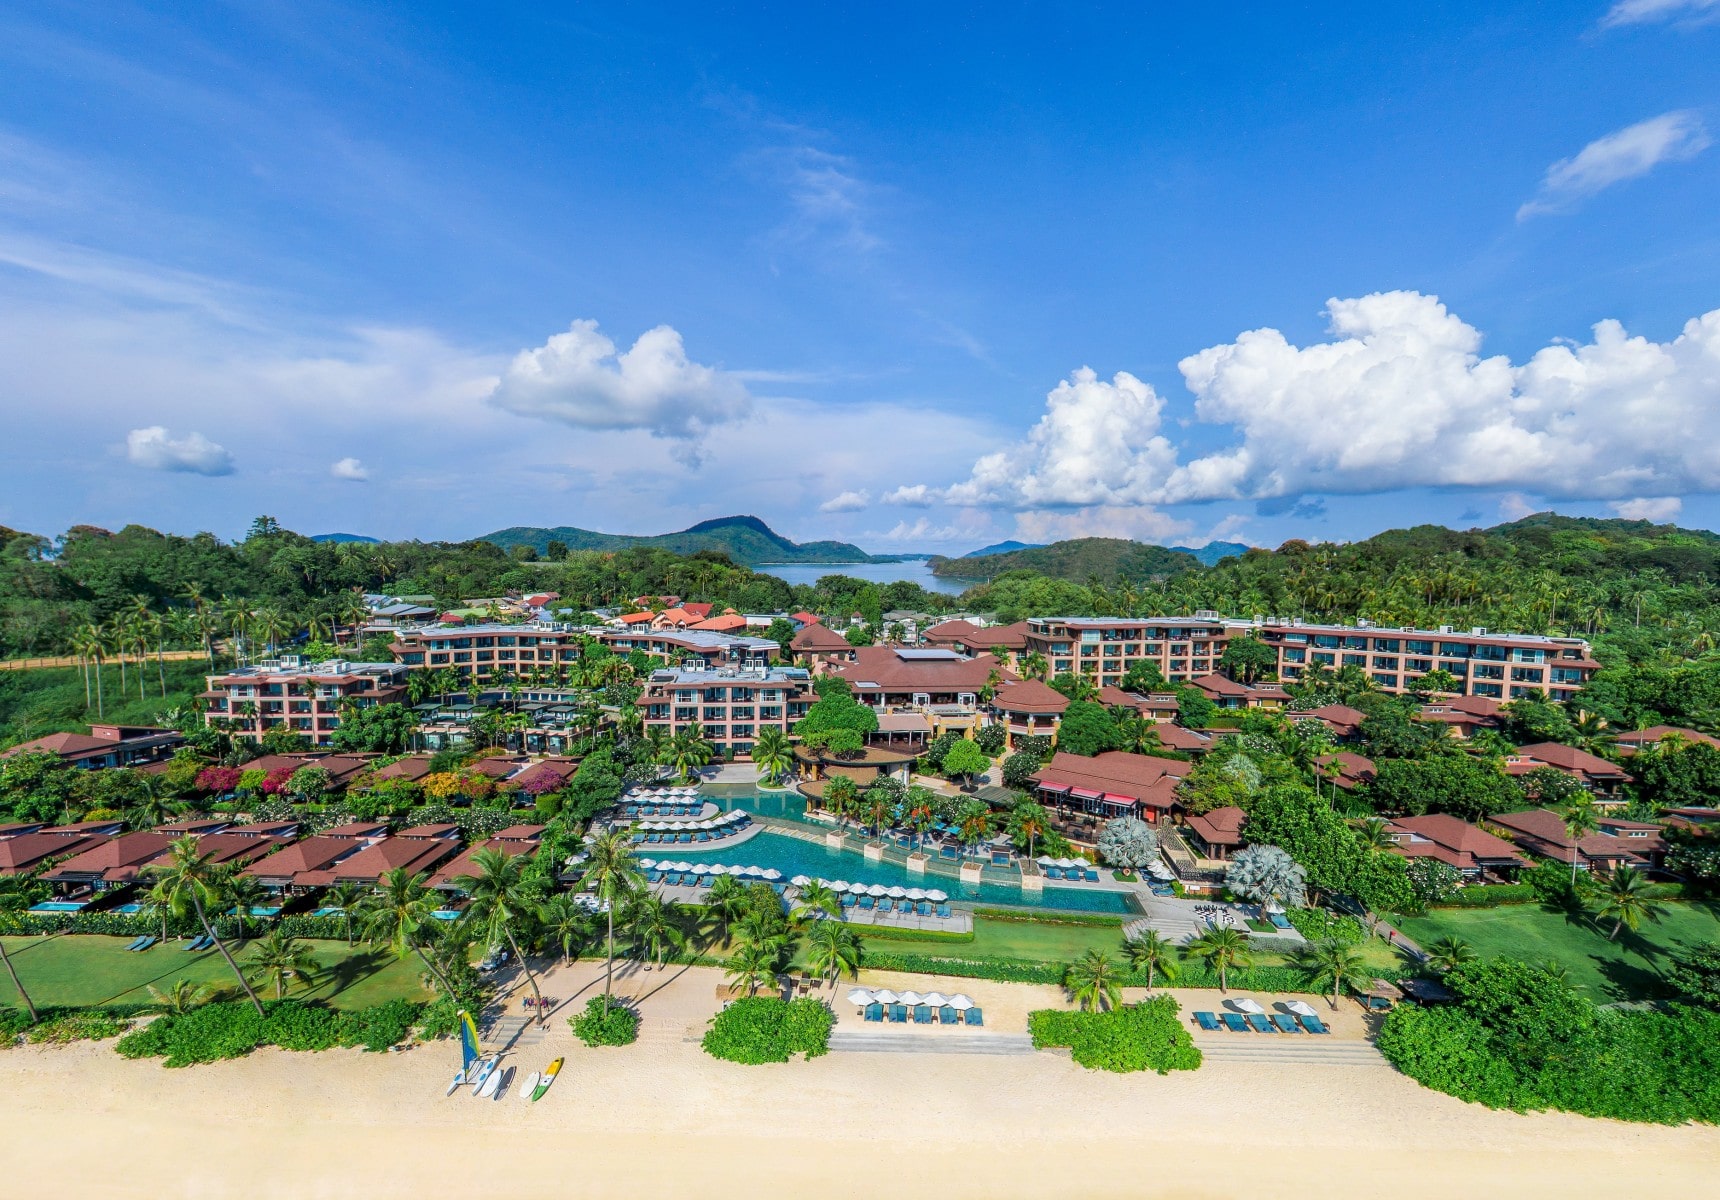 Pullman phuket panwa beach resort luxury resort